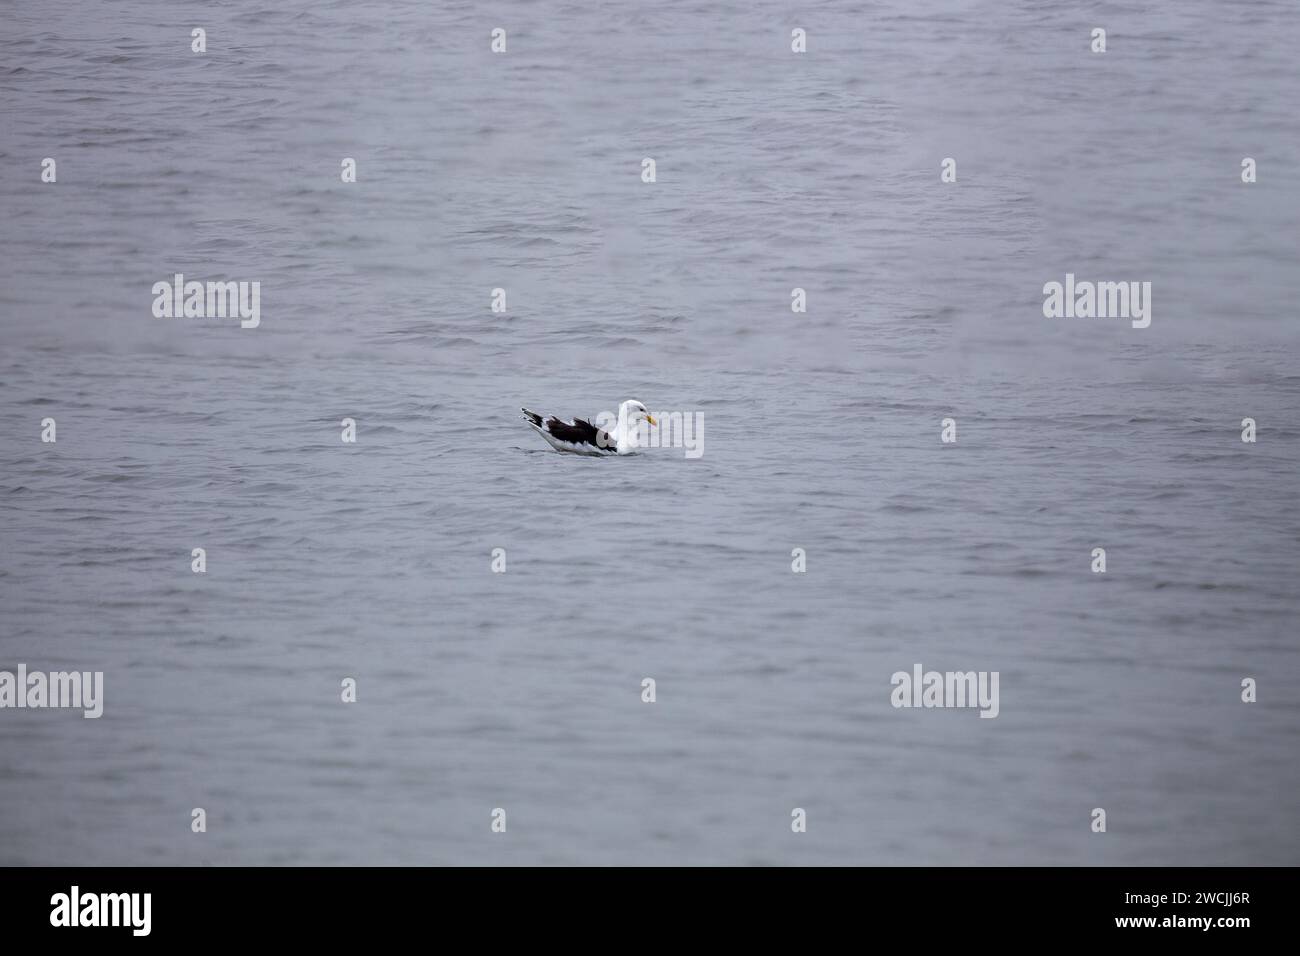 Vor der Küste von Howth, Dublin, patrouilliert eine gewaltige große Schwarzmöwe (Larus marinus) durch die Gewässer. Diese robuste Küstenwache zeigt die Ru Stockfoto